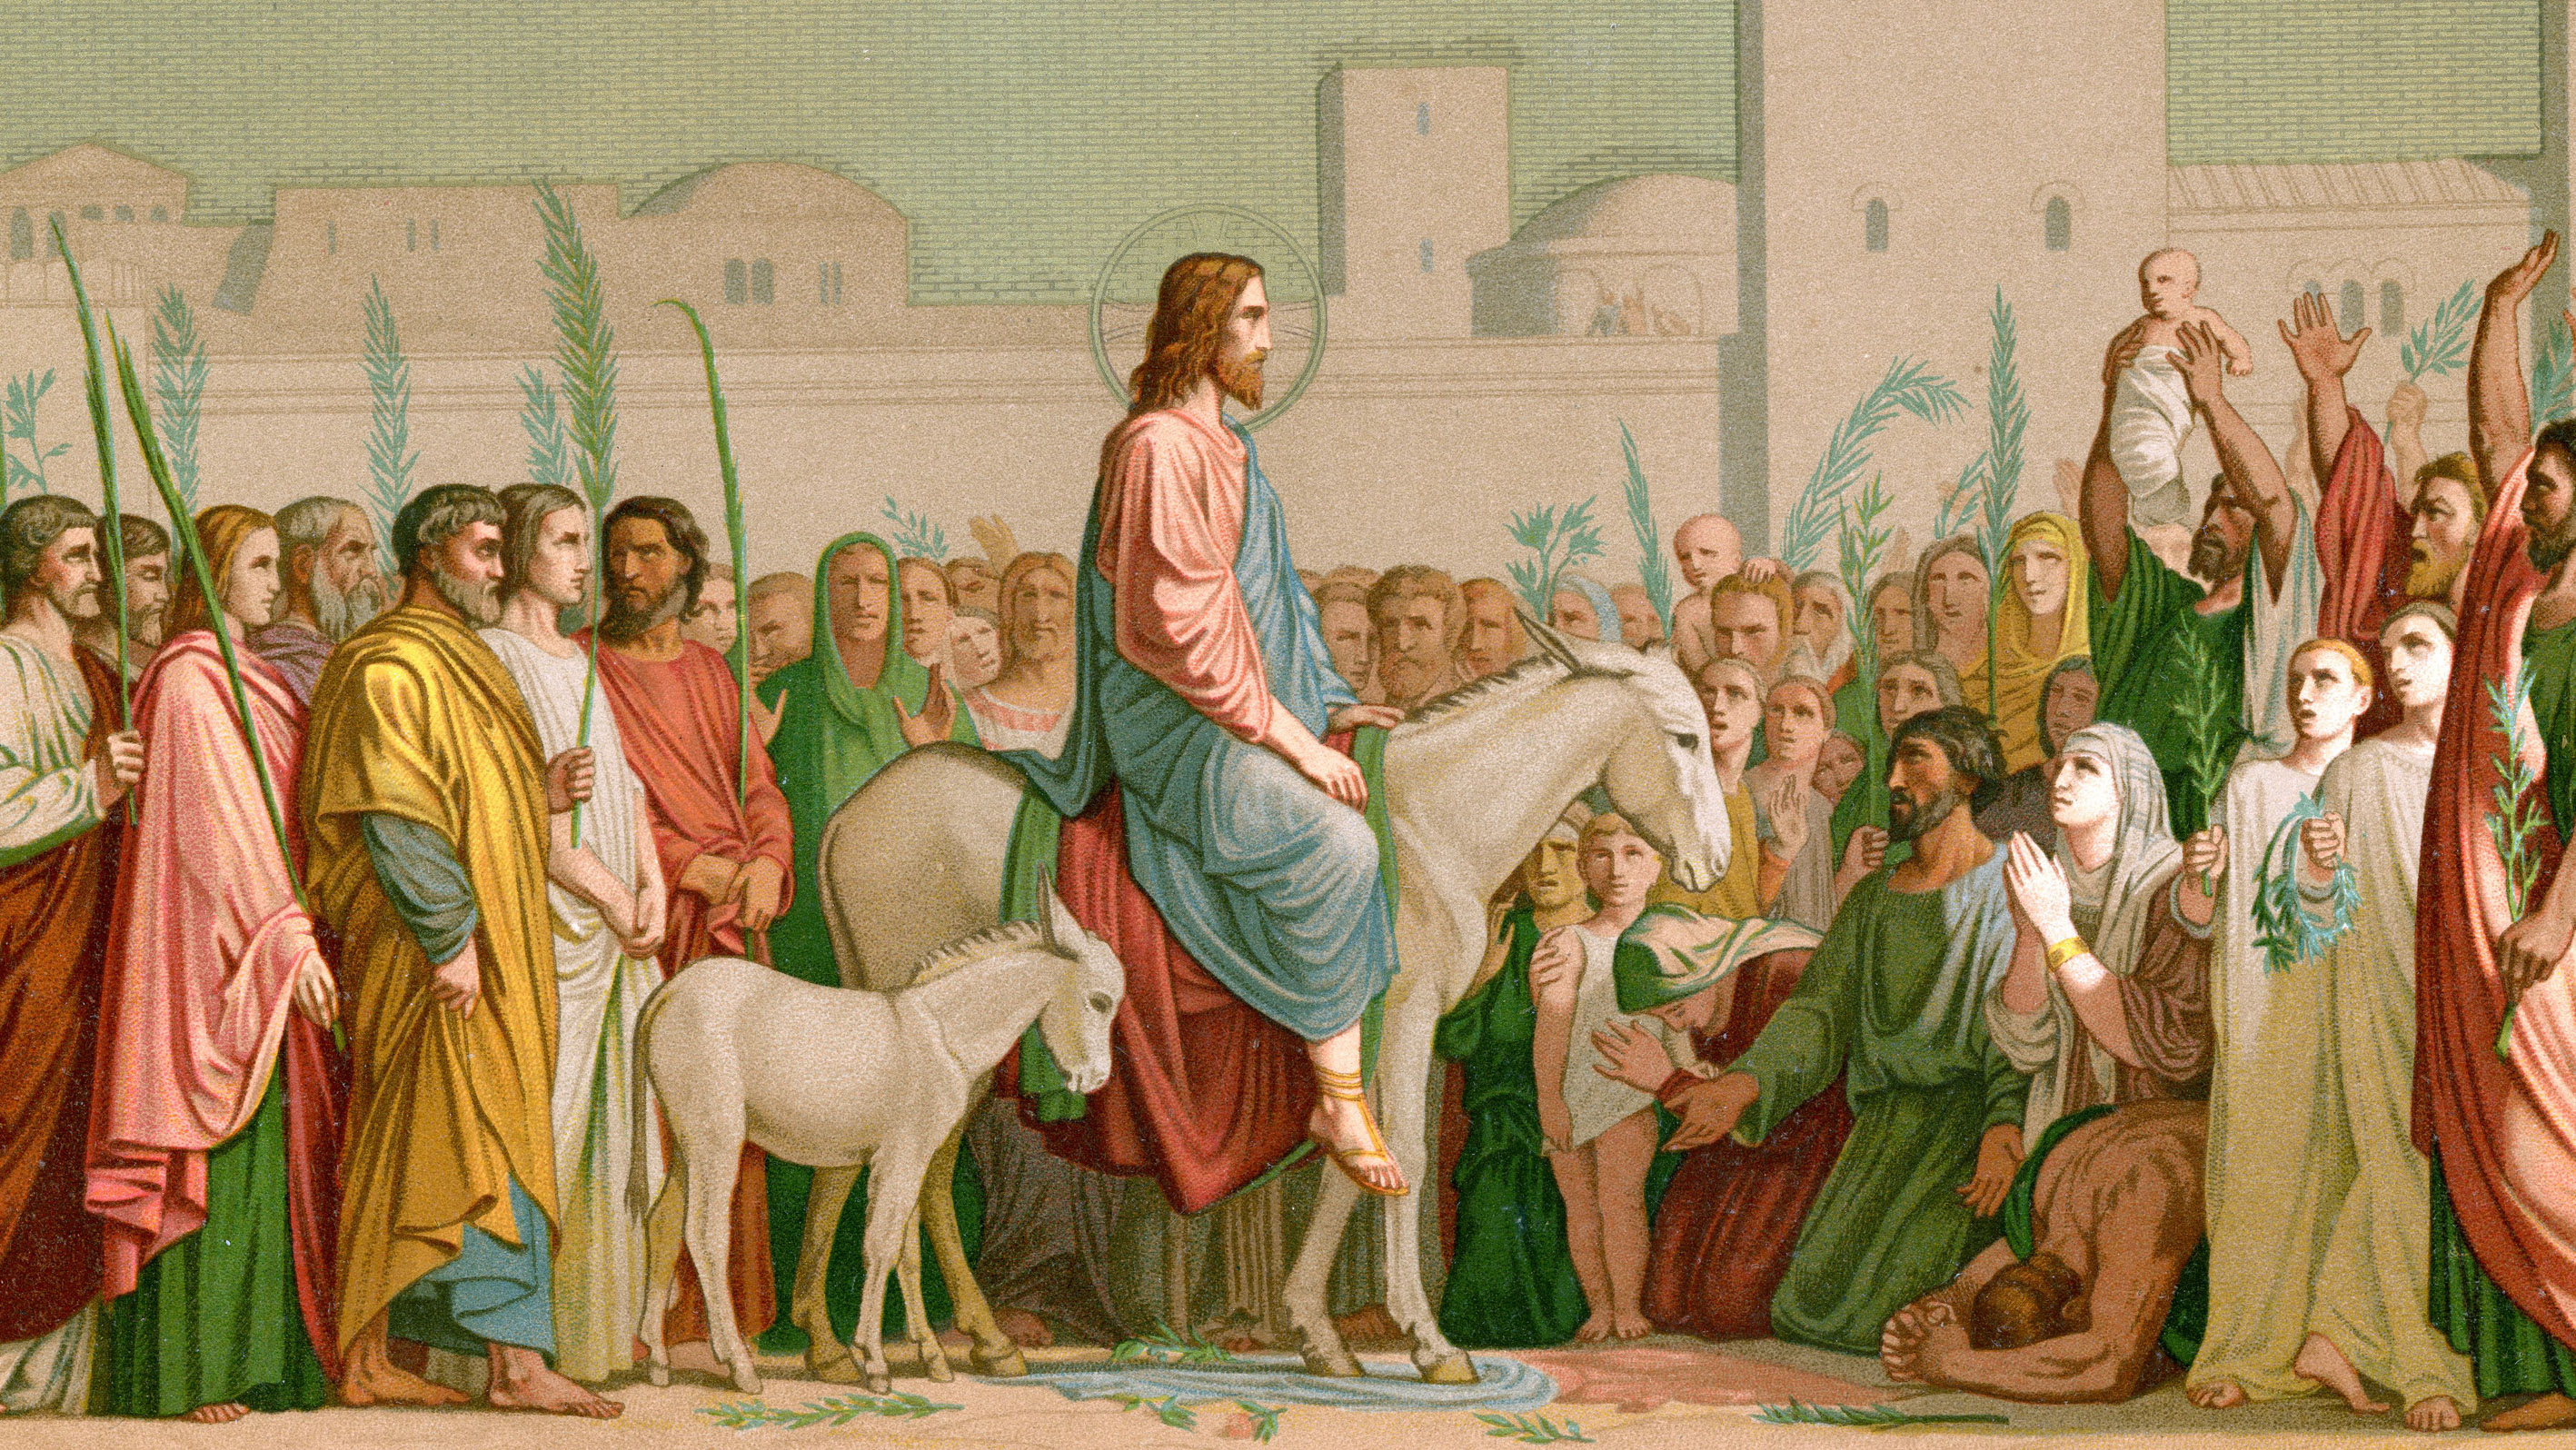 Gemaelde von Hippolyte Flandrin (1809-1864) 'Einzug Jesu in Jerusalem an Palmsonntag' (Eglise Saint-Germain-des-Pres de Paris).